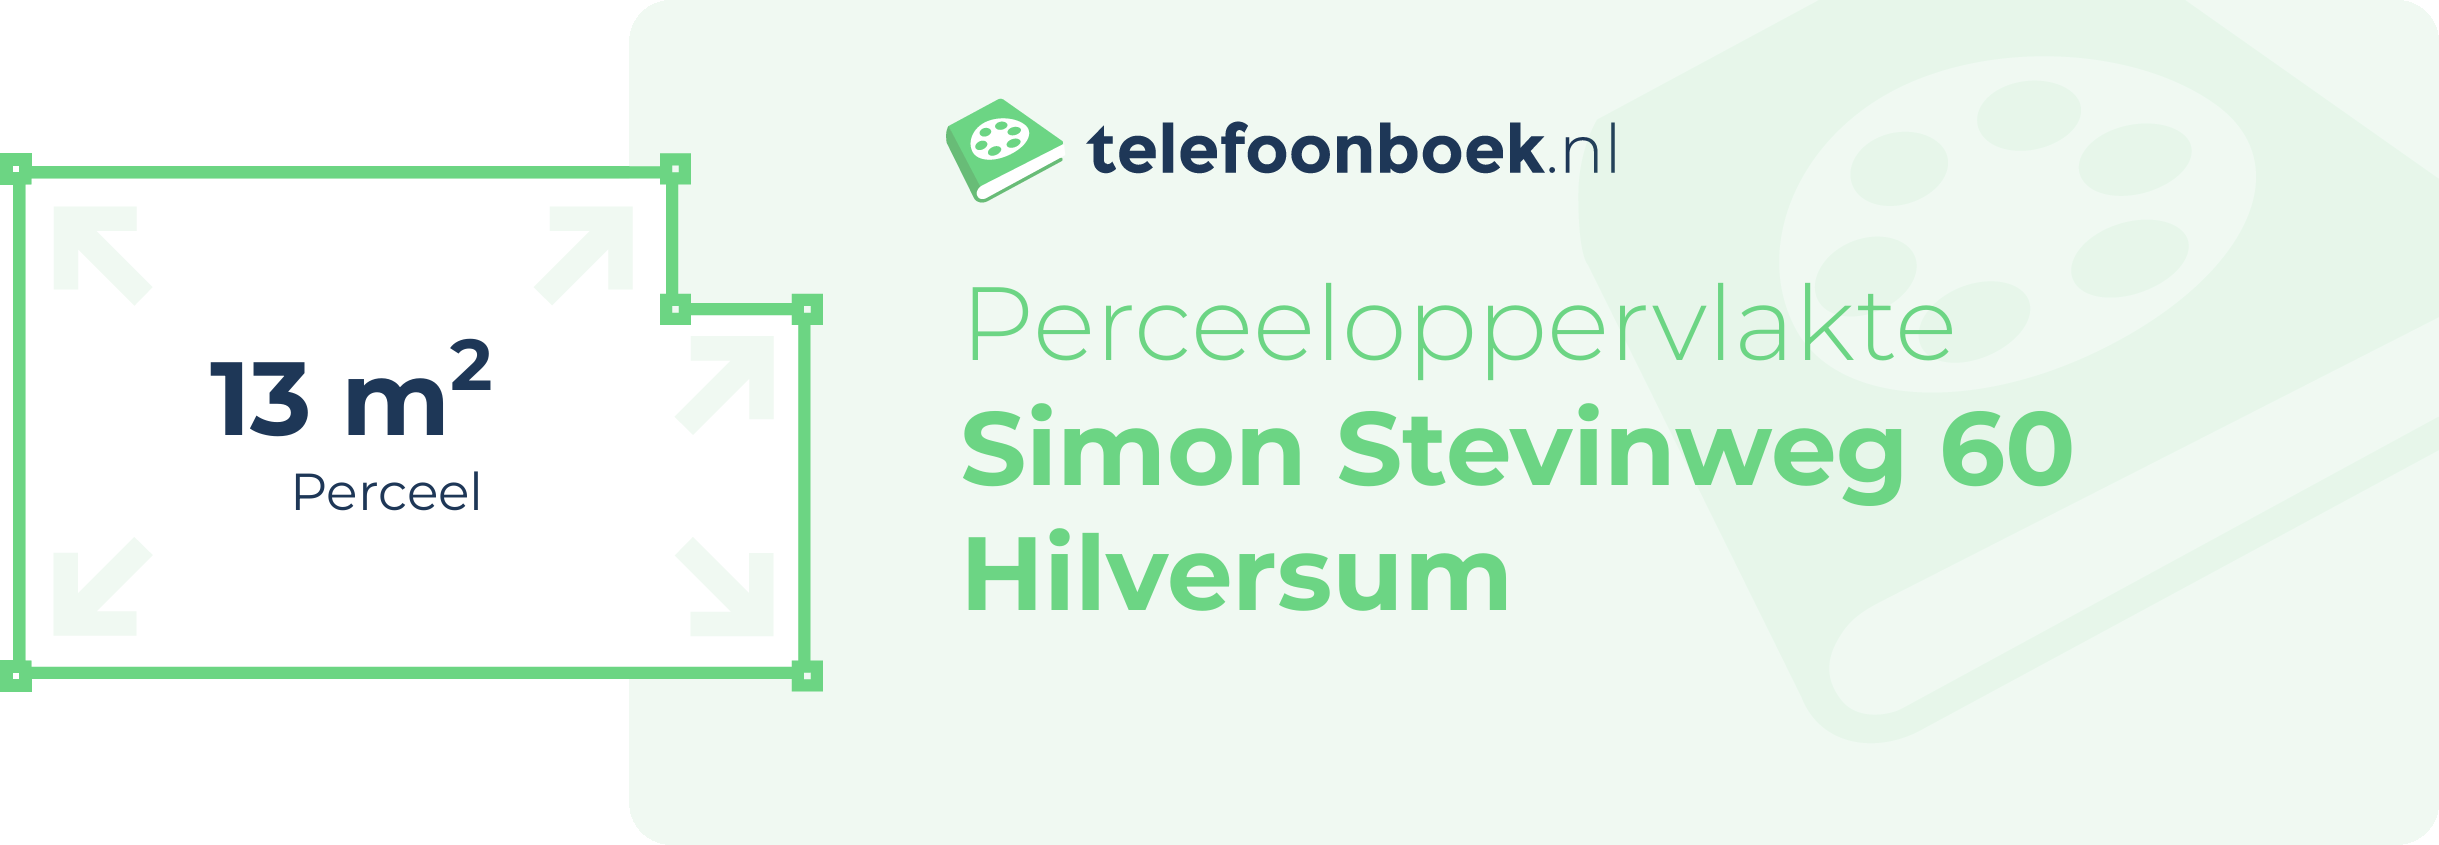 Perceeloppervlakte Simon Stevinweg 60 Hilversum